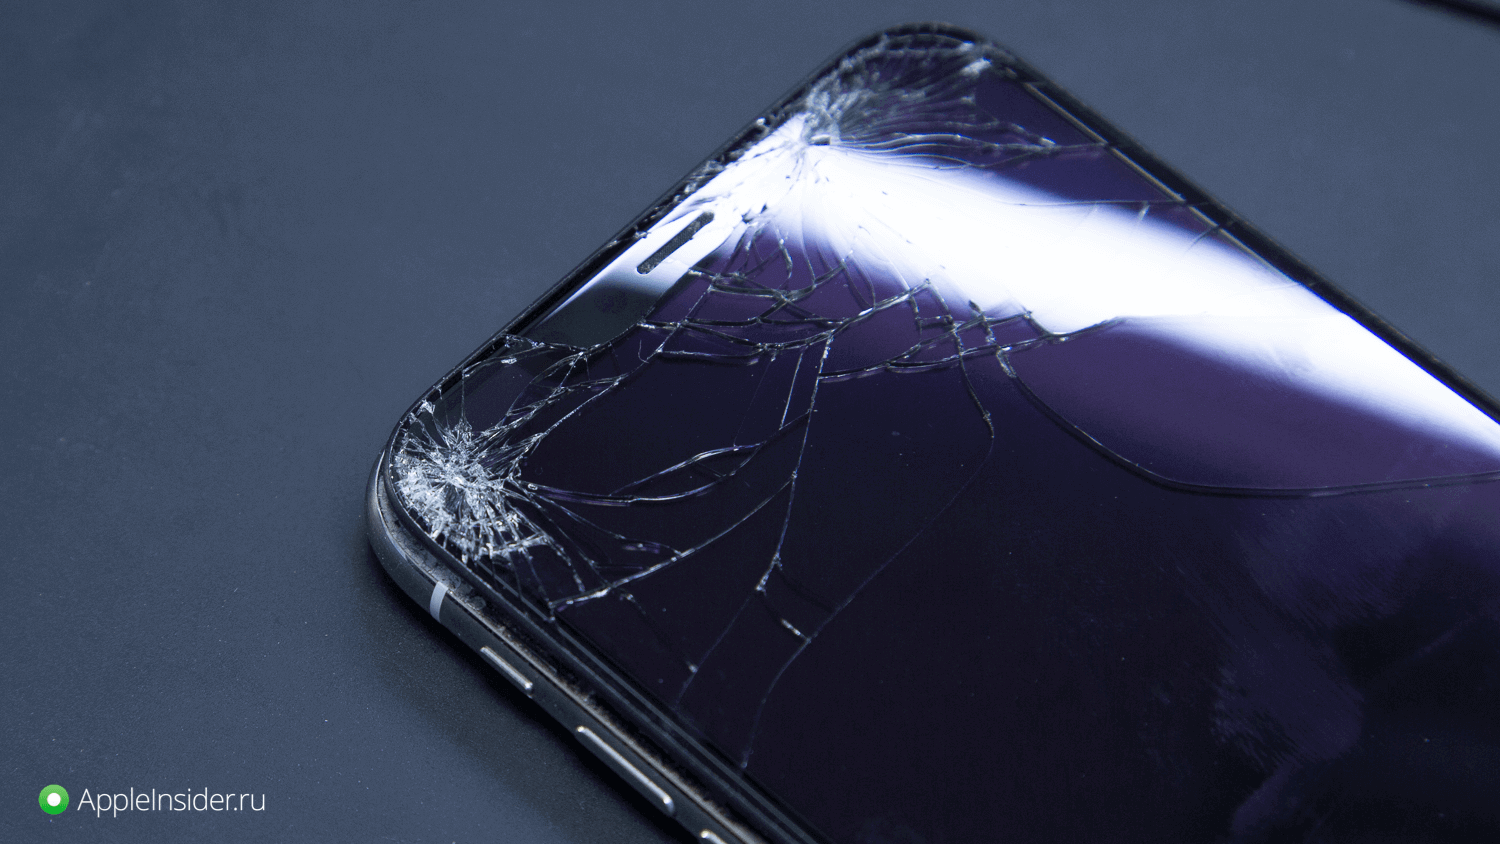 Разбитый экран Обои на телефон бесплатно для Android и iPhone